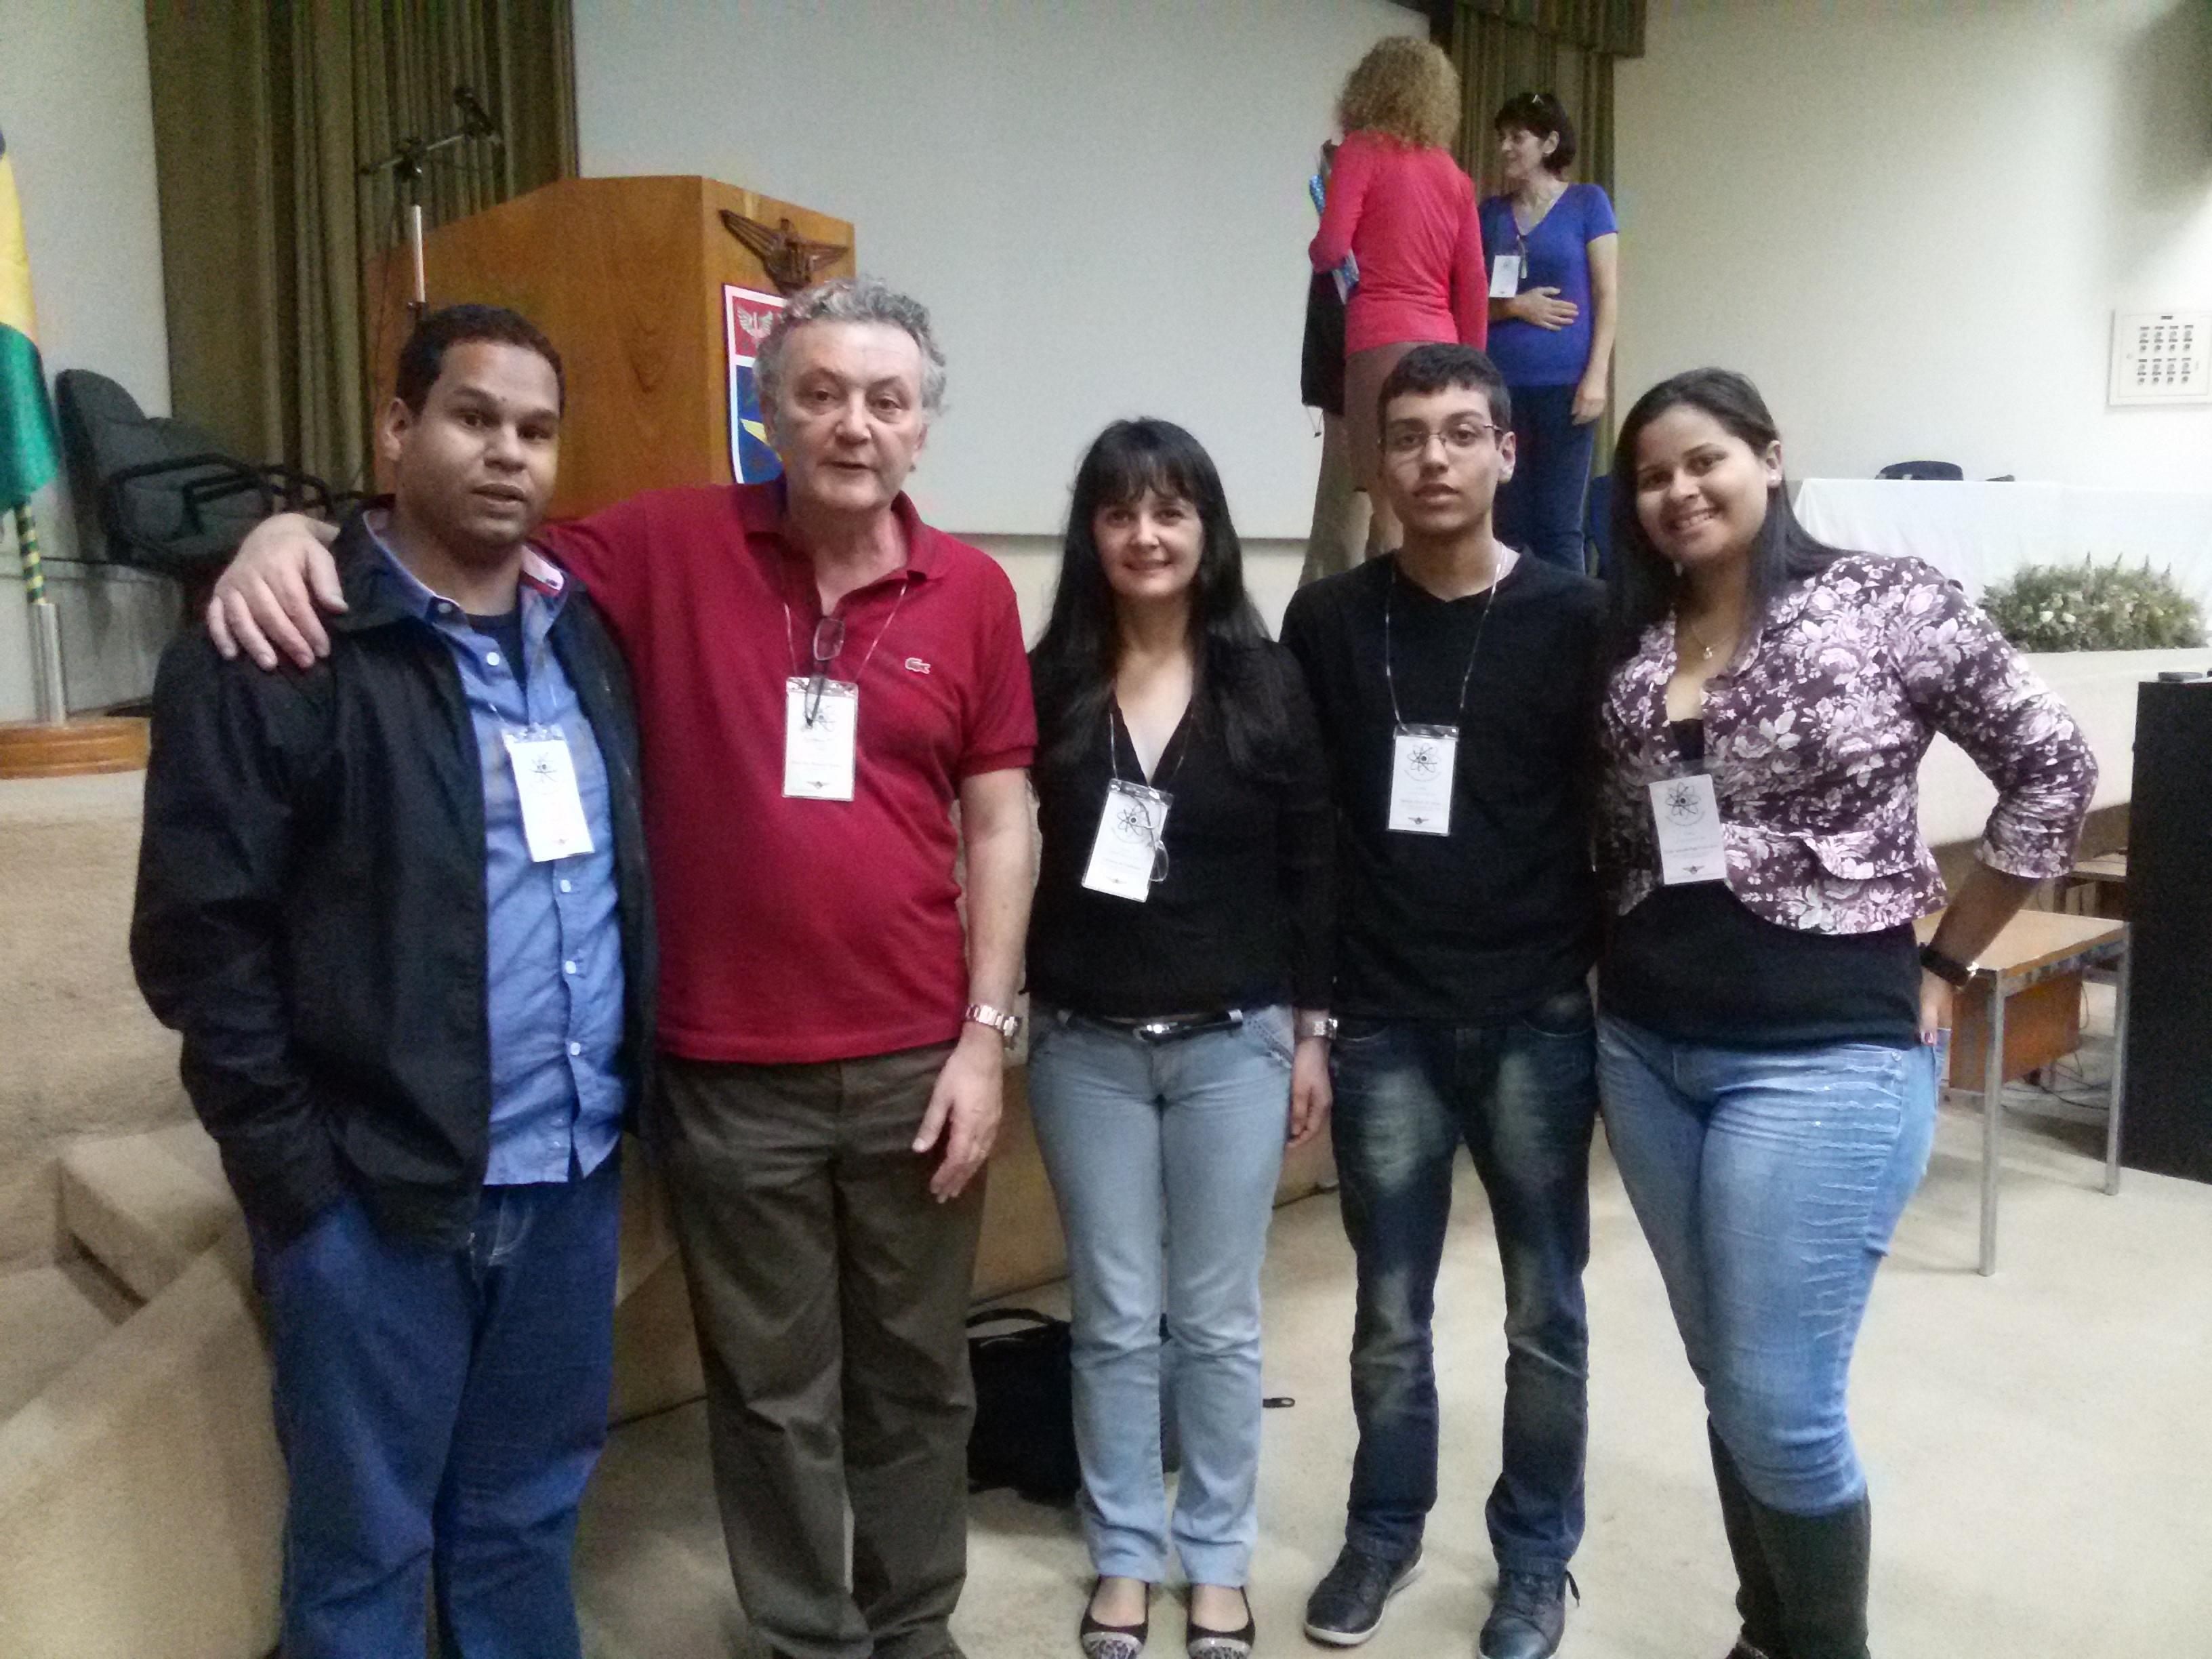 João, Adriana, Dérick Alves e Ariane, juntamente com o Prof. Dr. Manuel Máximo Bastos Malheiro de Oliveira, coordenador da comissão organizadora do X EFITA